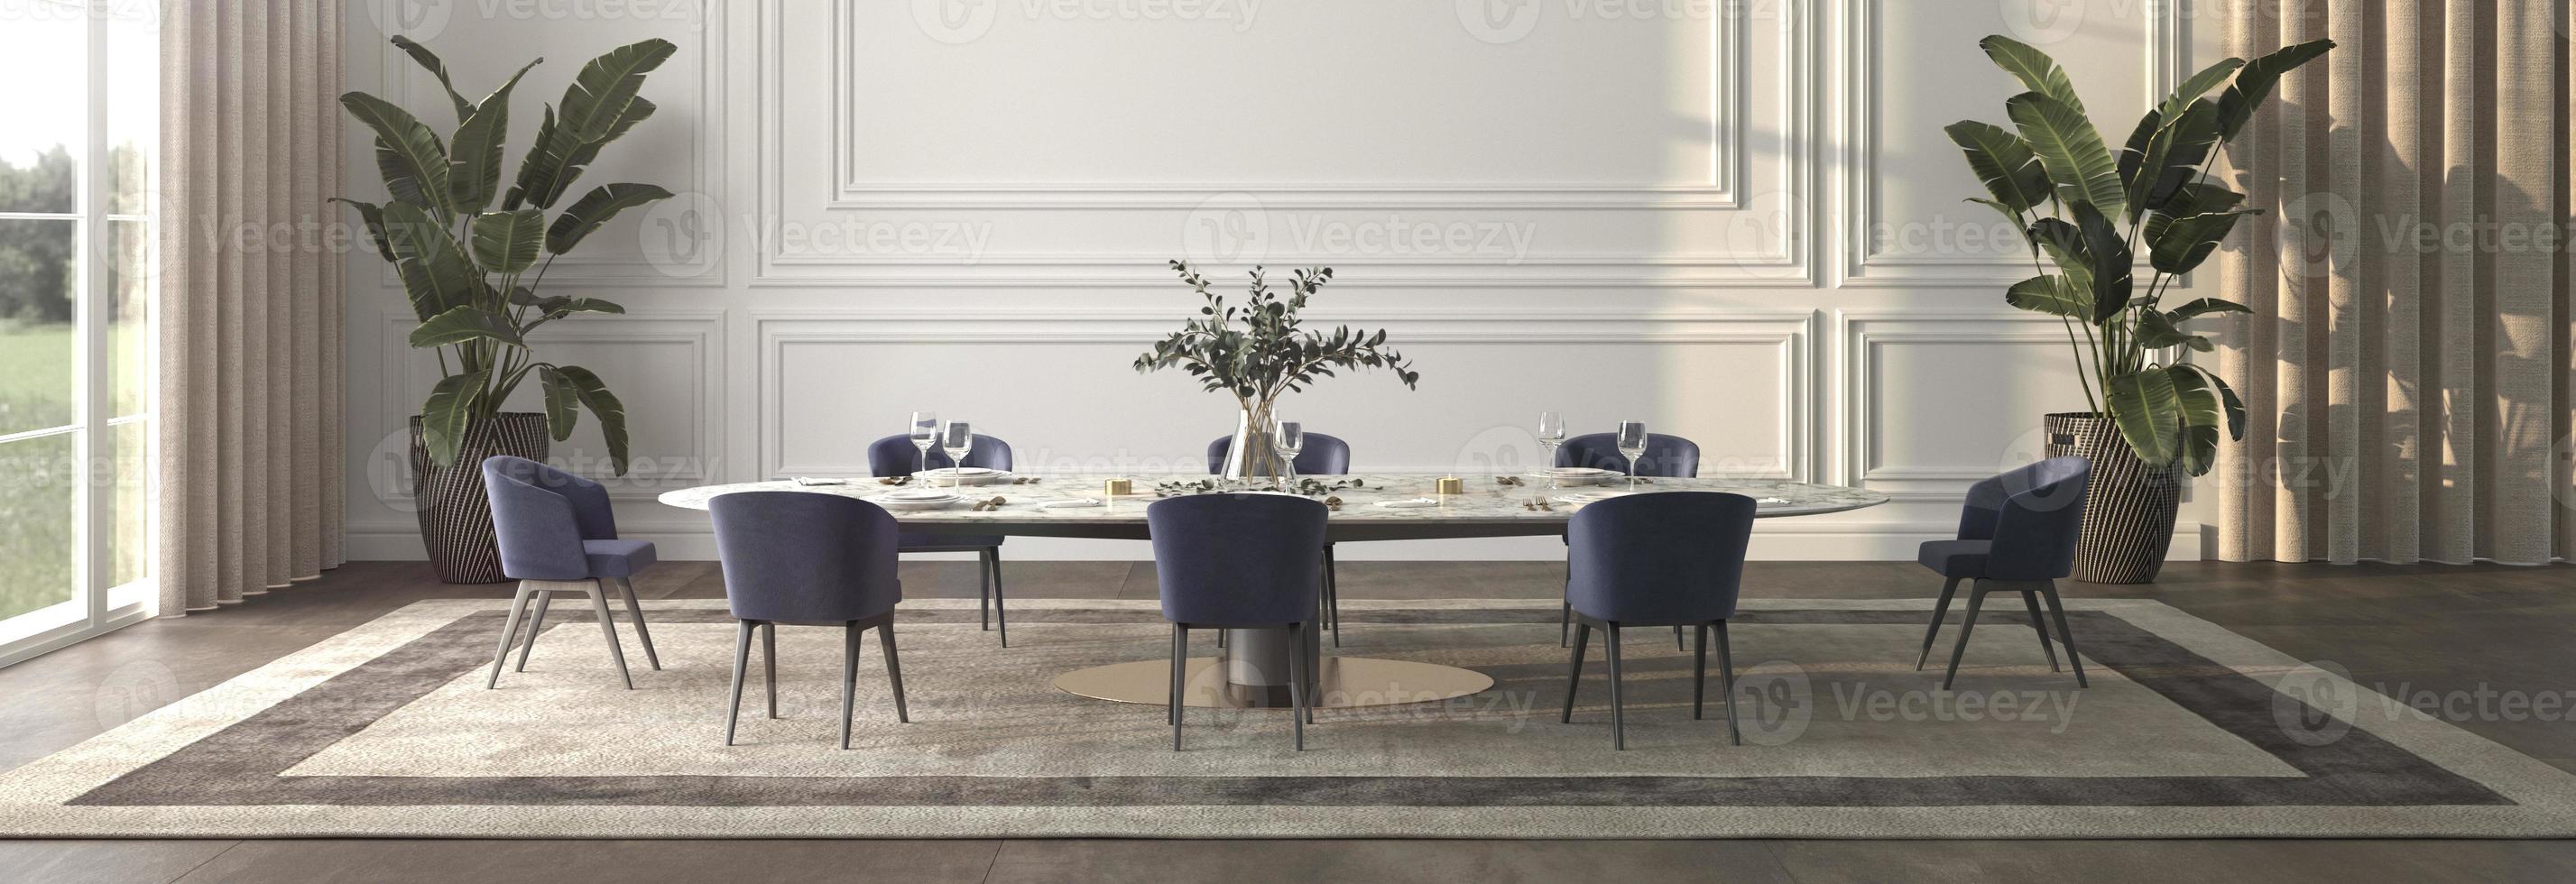 Luxus-Speisesaal mit Sonnenlicht und Blick in die Natur. Tisch mit Service und Pflanzen. 3D-Darstellung Innenarchitektur. Web-Banner. foto